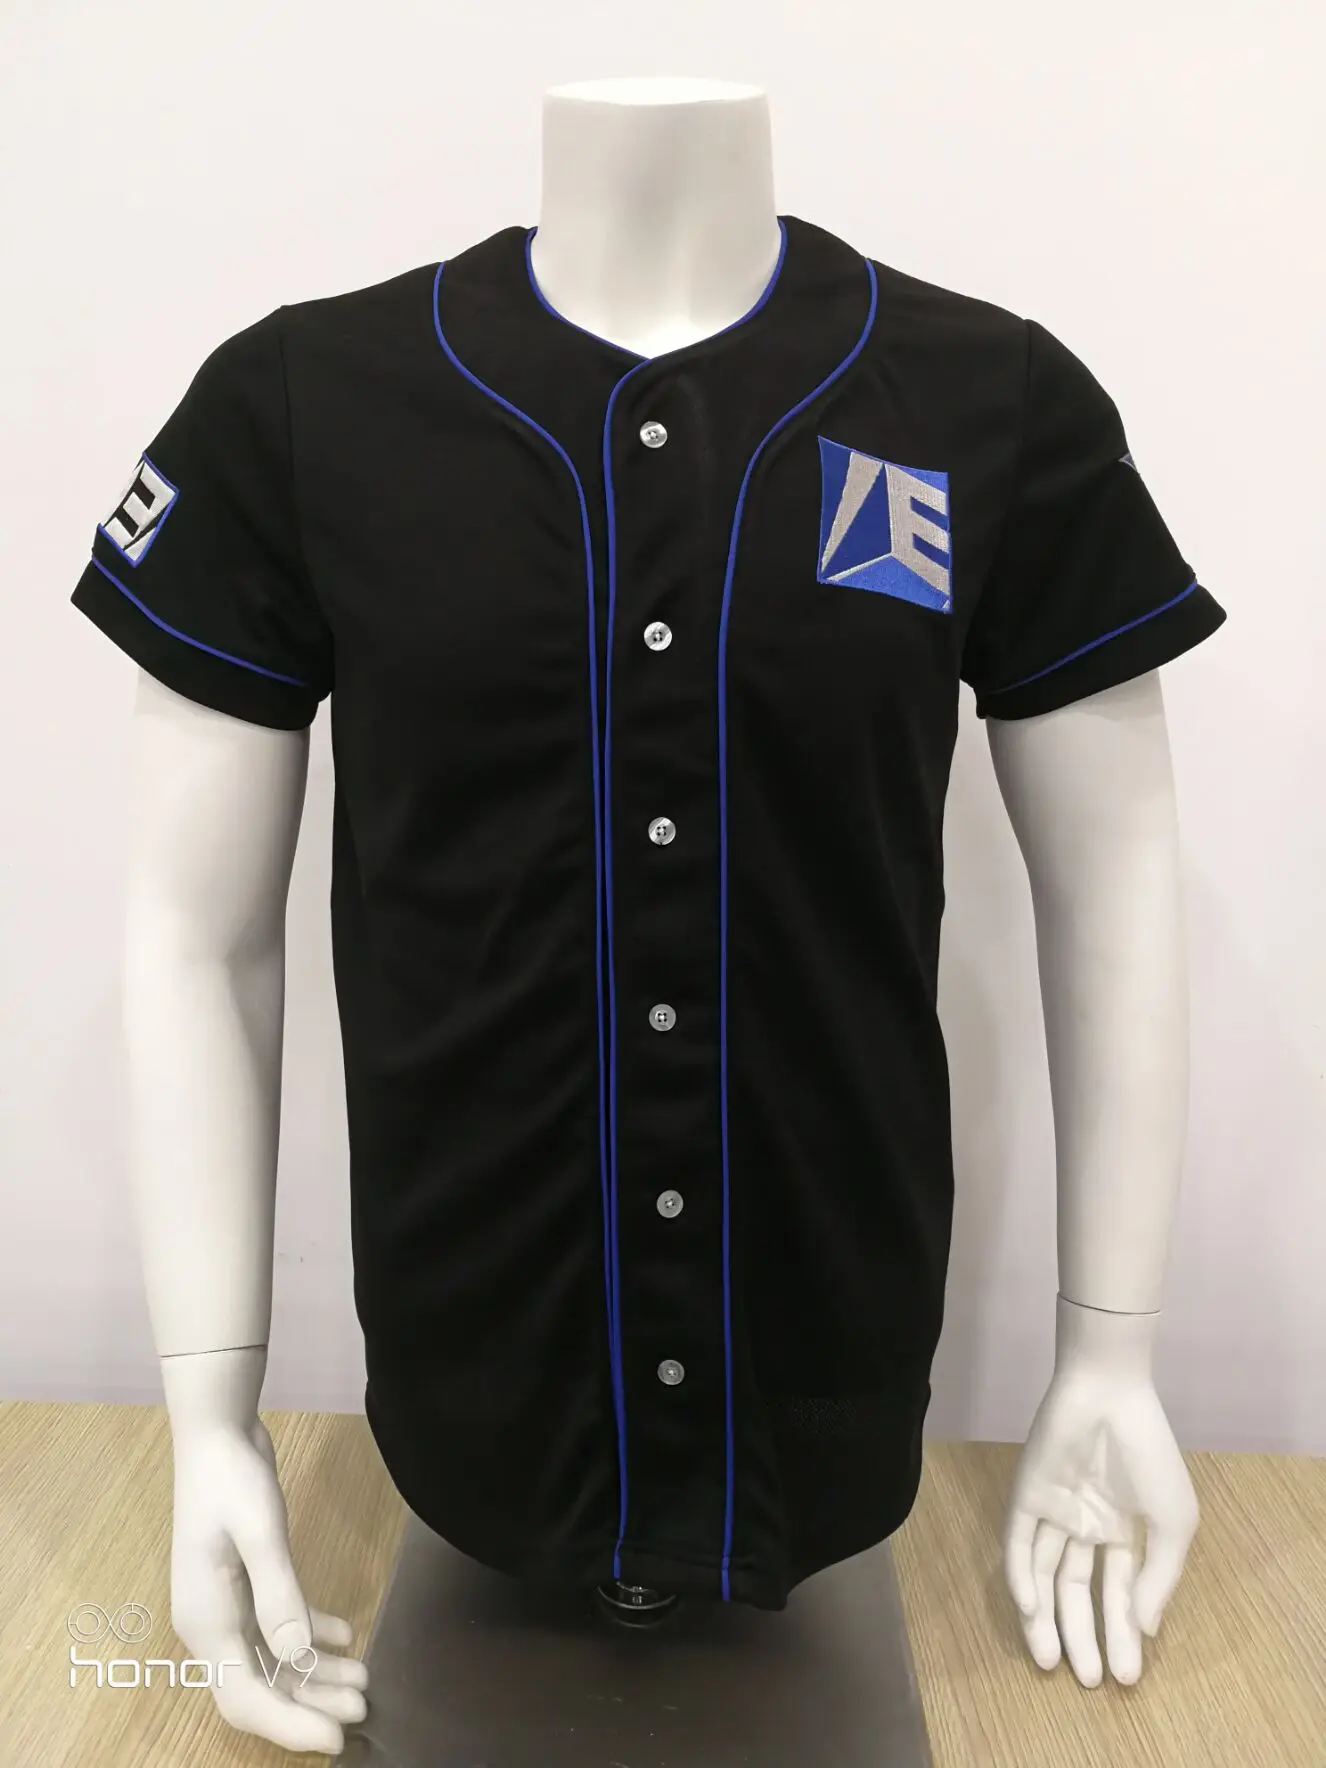 Source black 100% polyester baseball jersey with blue piping blank baseball  jerseys wholesale custom baseball jersey shirts on m.